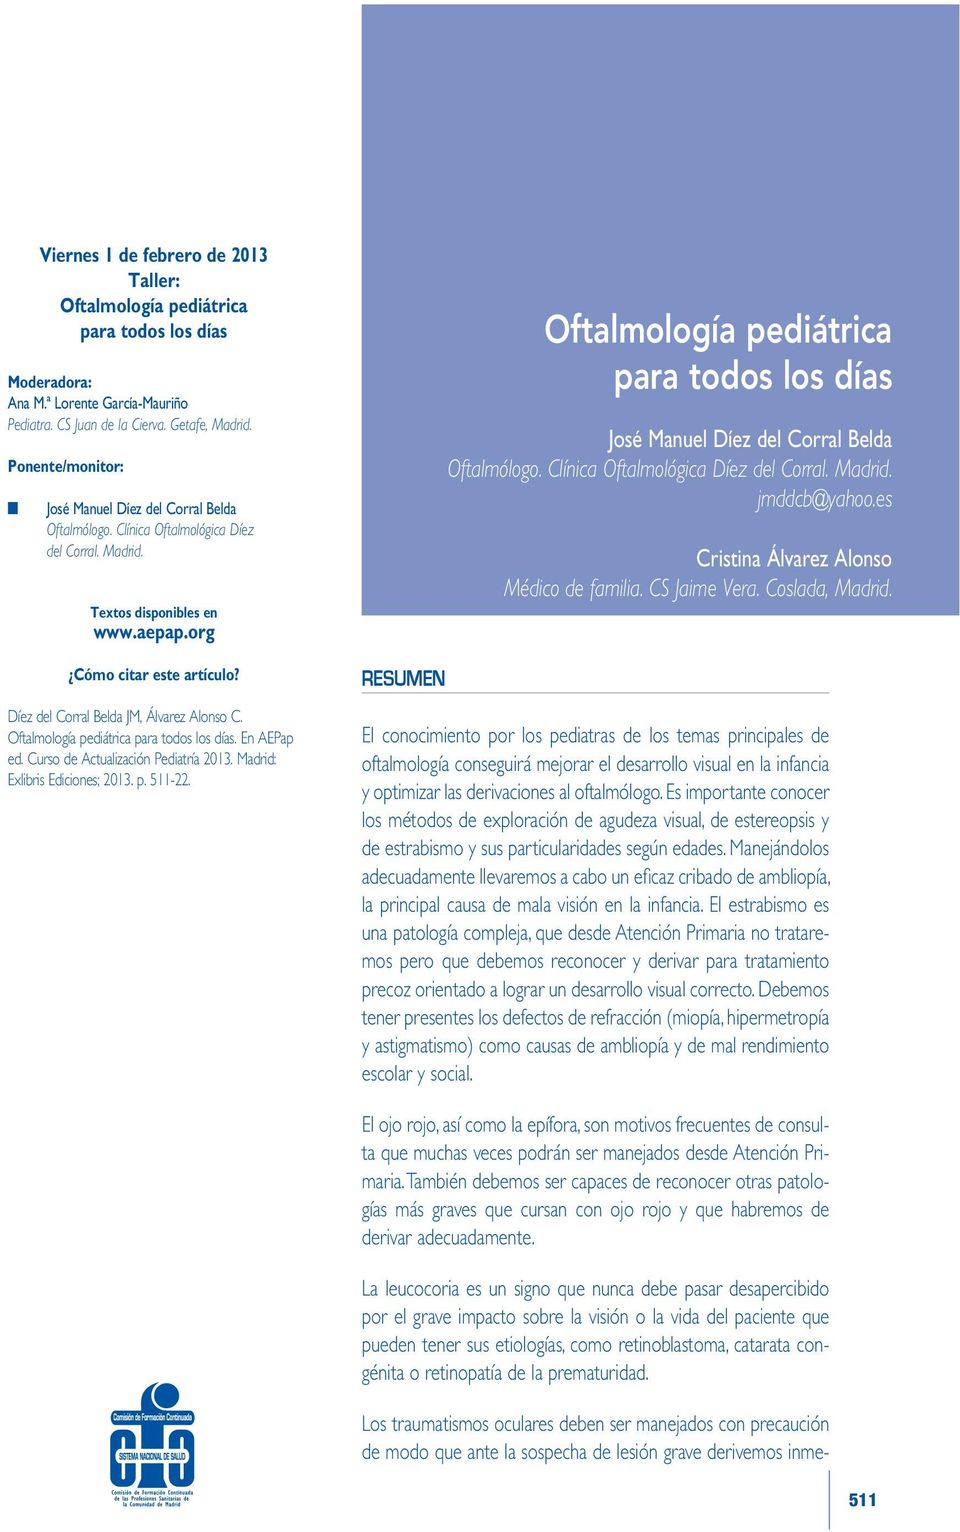 Díez del Corral Belda JM, Álvarez Alonso C. Oftalmología pediátrica para todos los días. En AEPap ed. Curso de Actualización Pediatría 2013. Madrid: Exlibris Ediciones; 2013. p. 511-22.